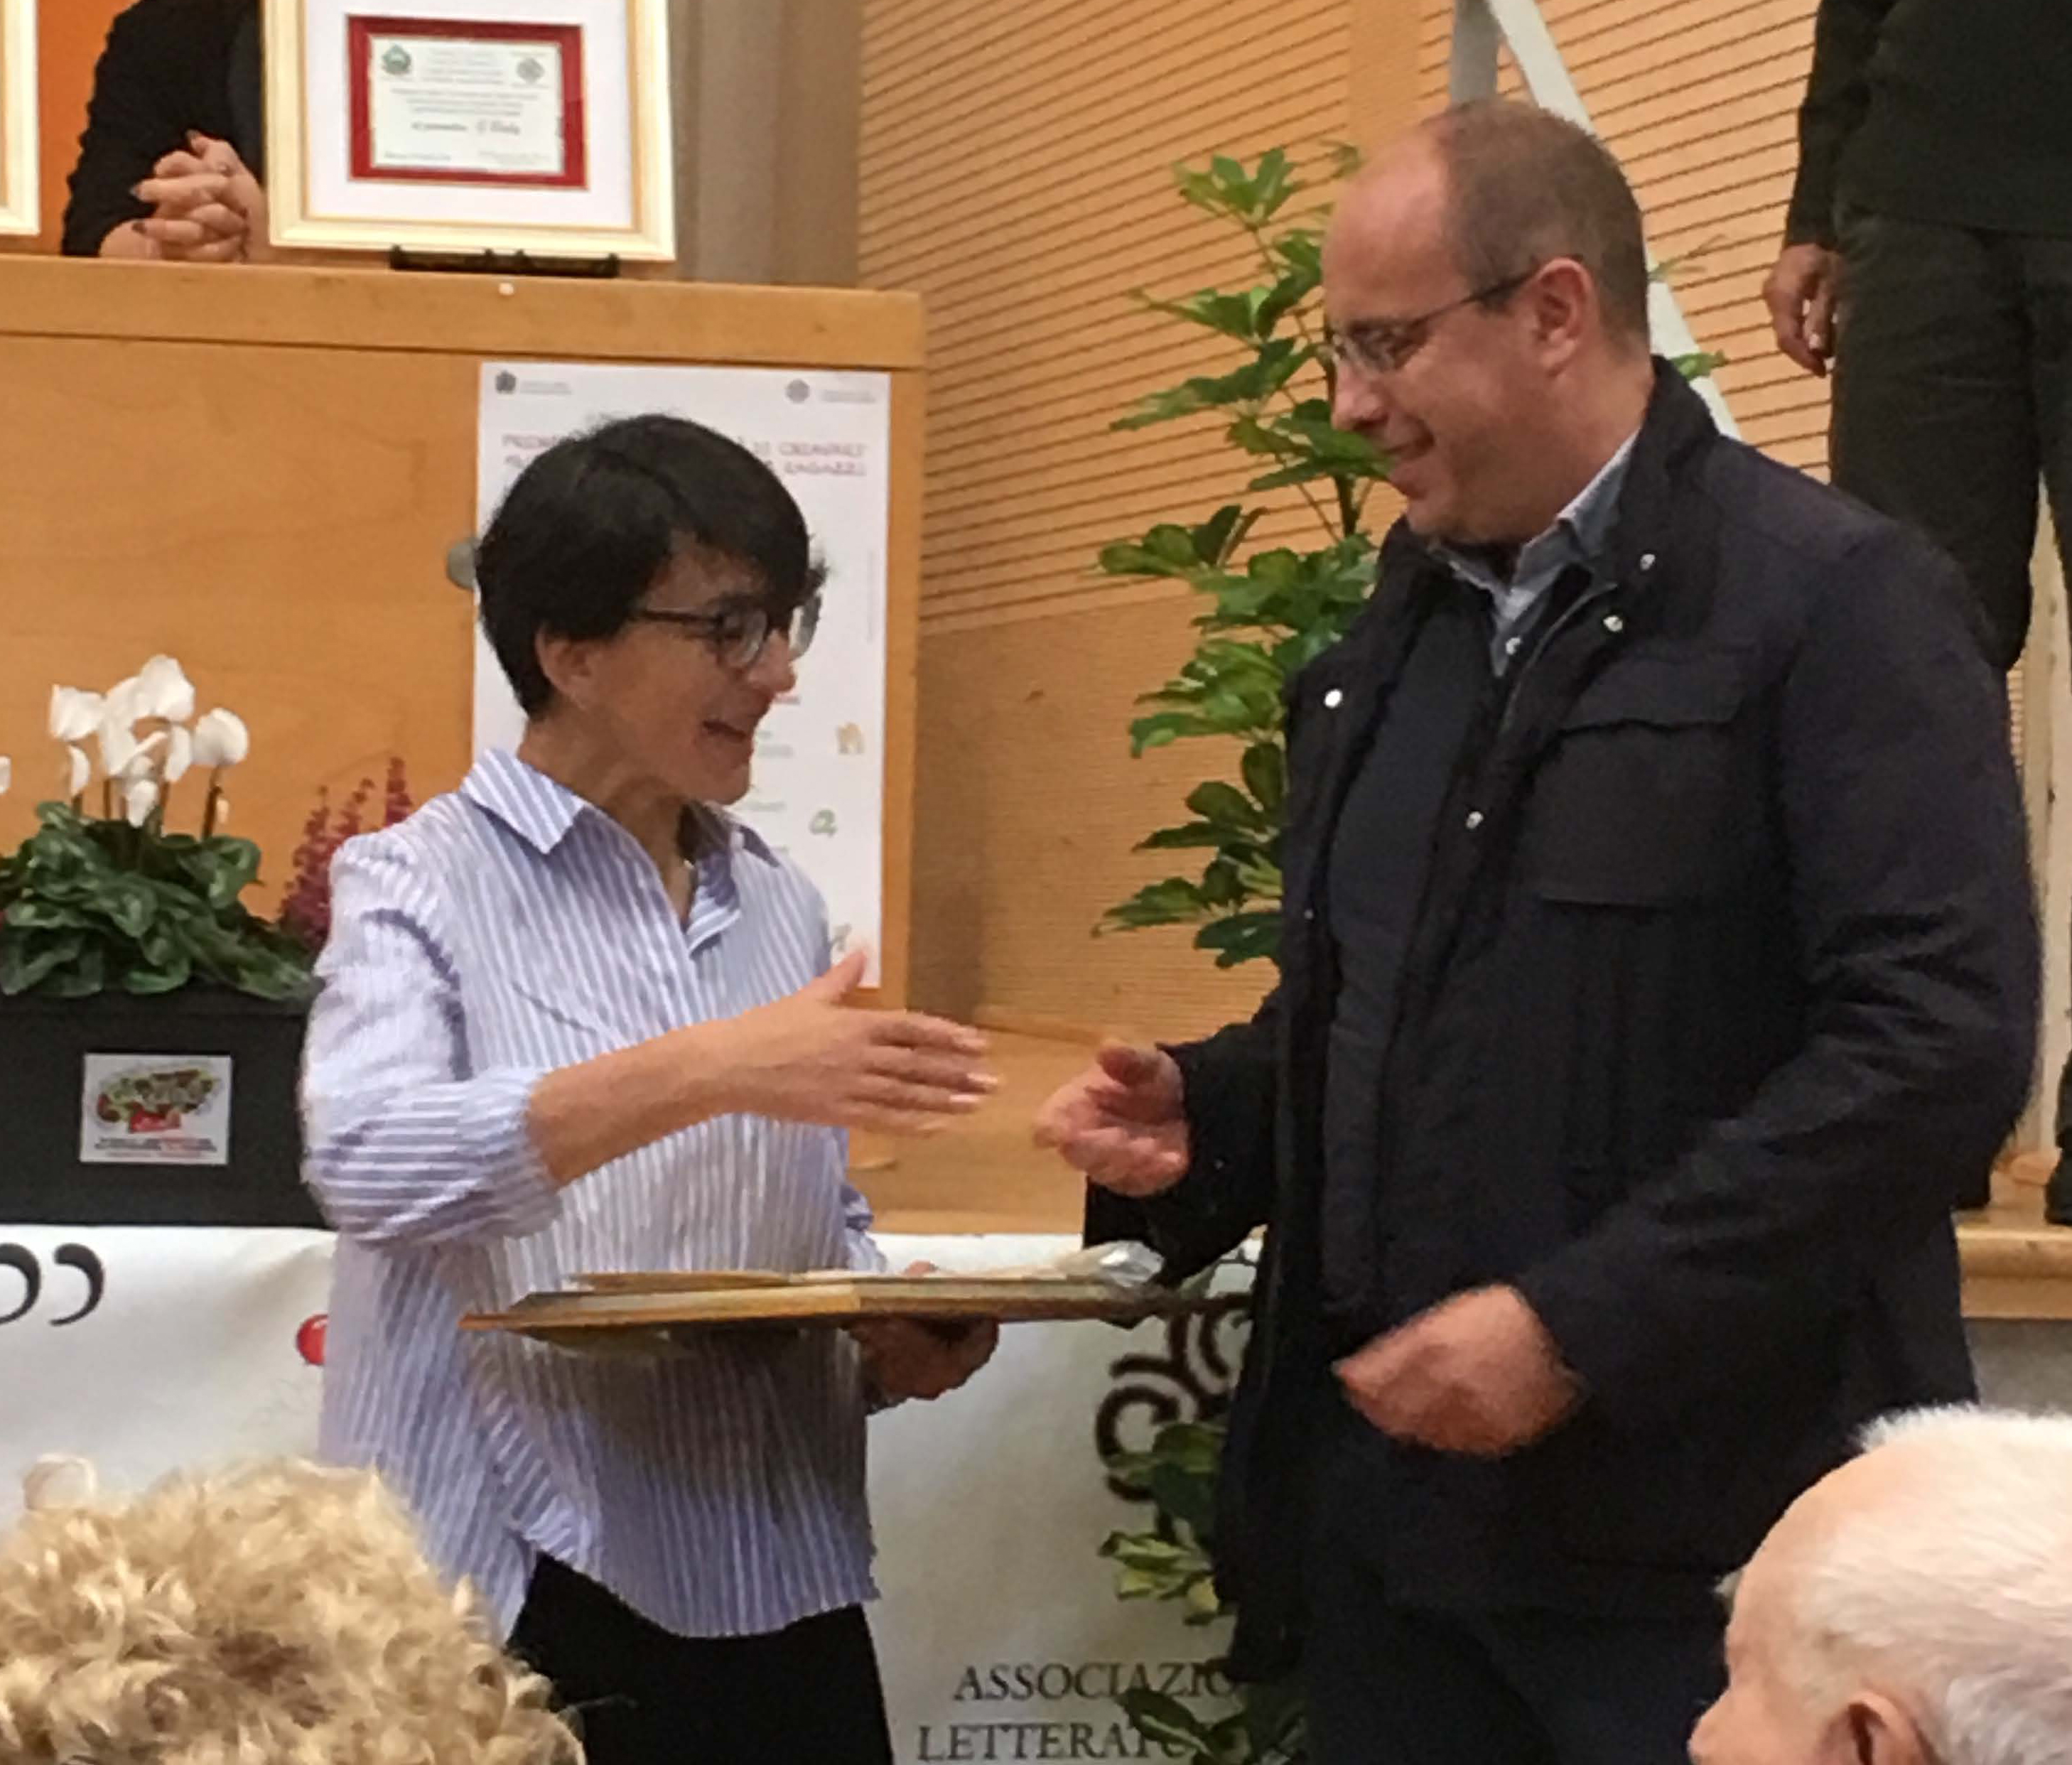 Marco Di Capua, Sindaco di Chiavari, consegna il Premio 2018 ad Anna Peiretti, Direttore de La Giostra